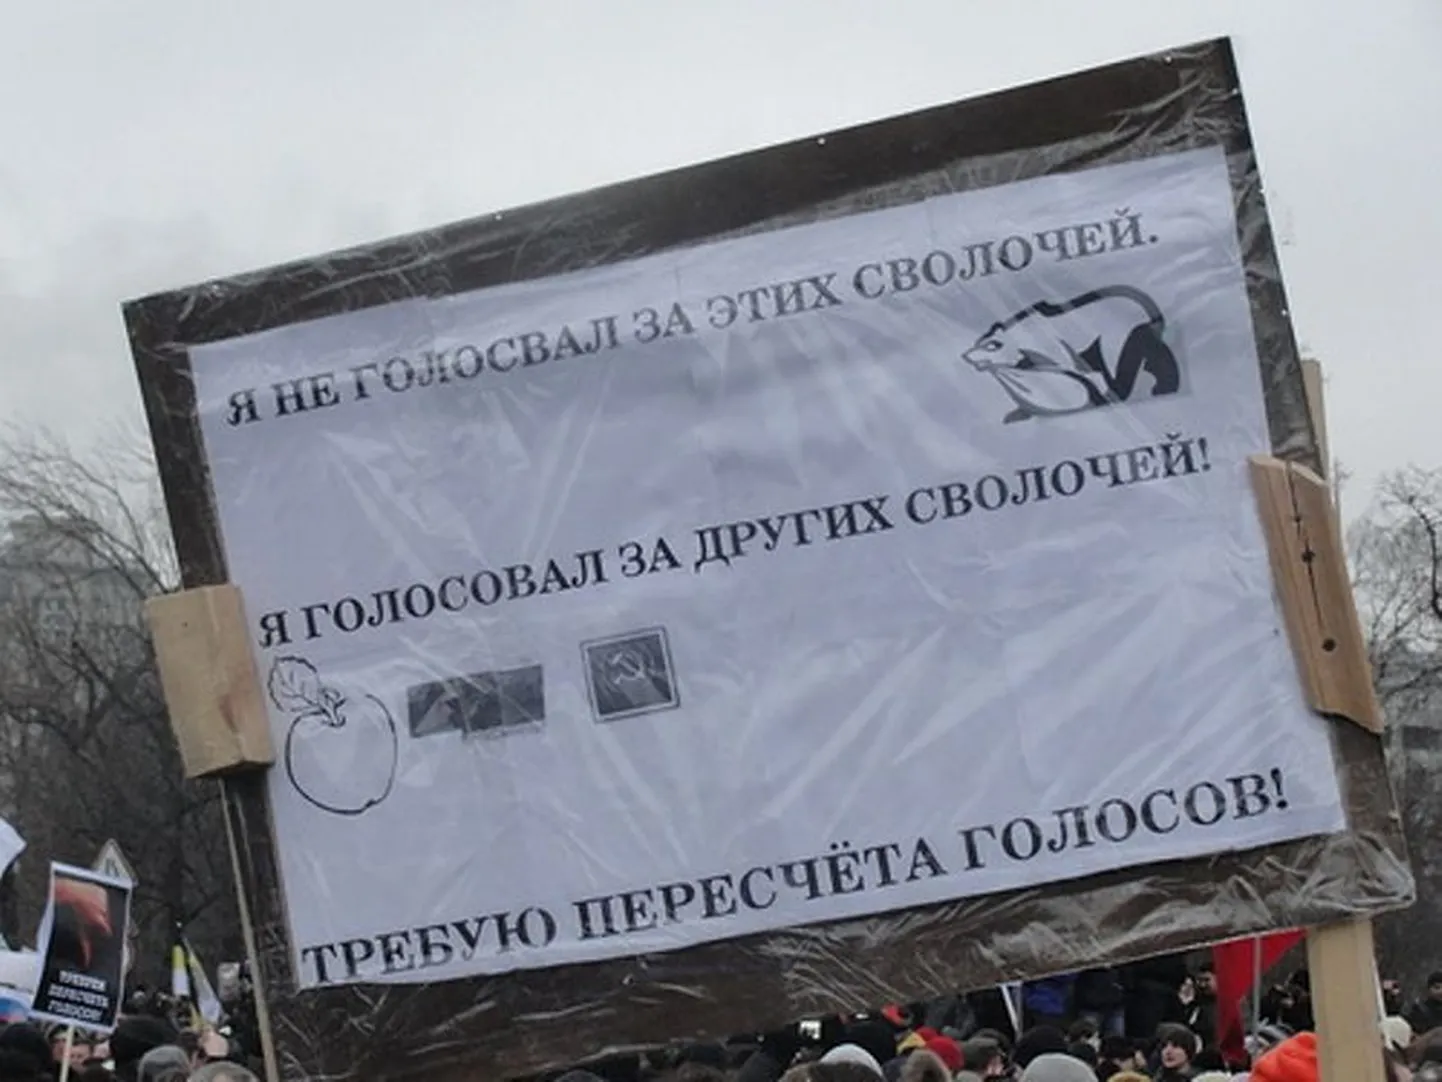 Фотография этого лозунга с митинга на Болотной обошла сотни блогов.